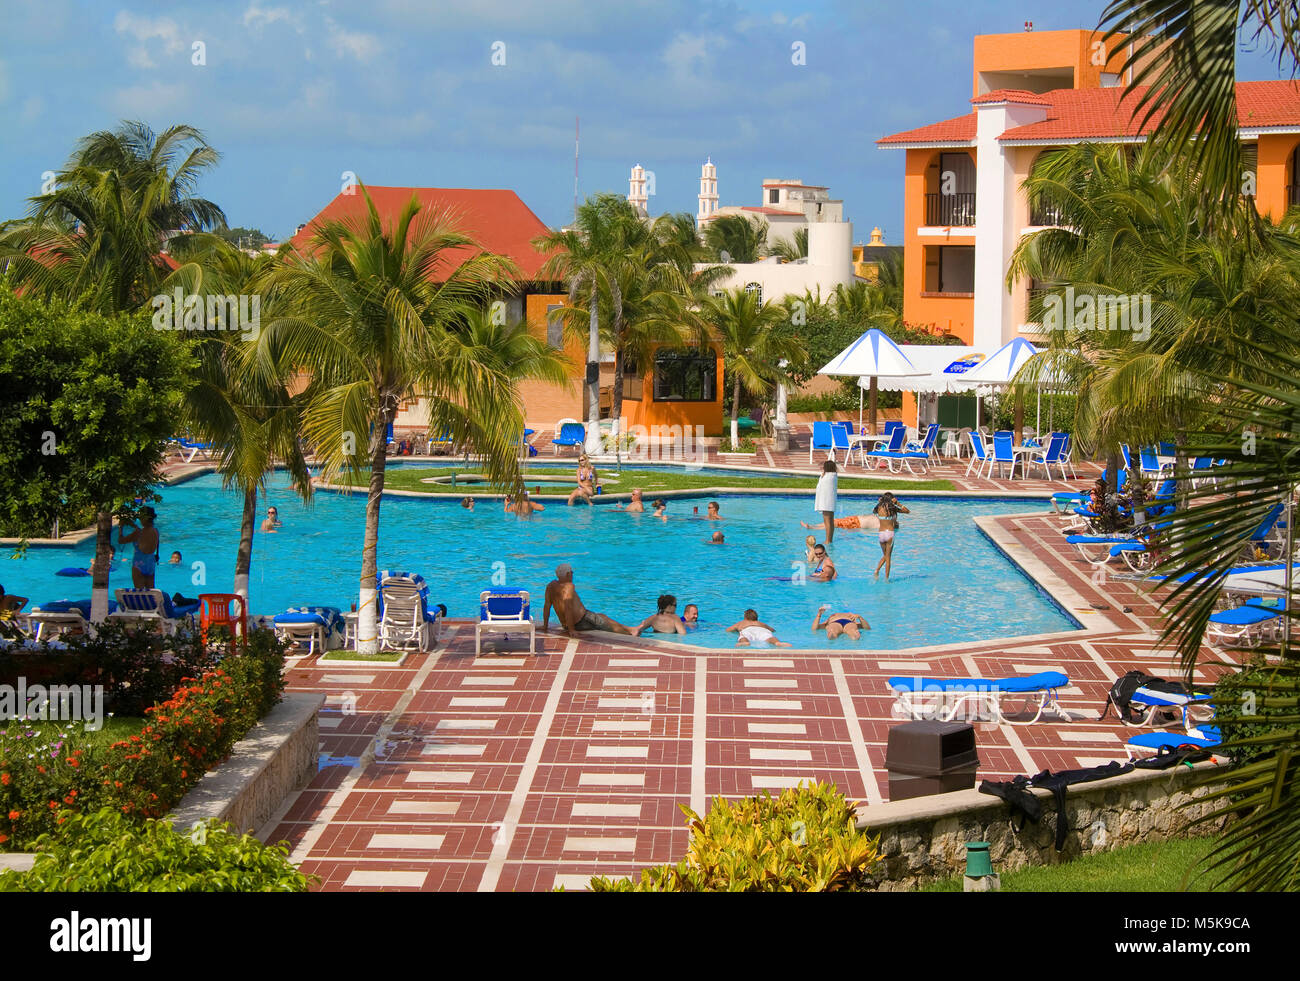 Pool-Landschaft im Hotel Cozumel, Cozumel, Mexiko, Karibik | Piscina en el Hotel Cozumel, Cozumel, México, el Caribe Foto de stock